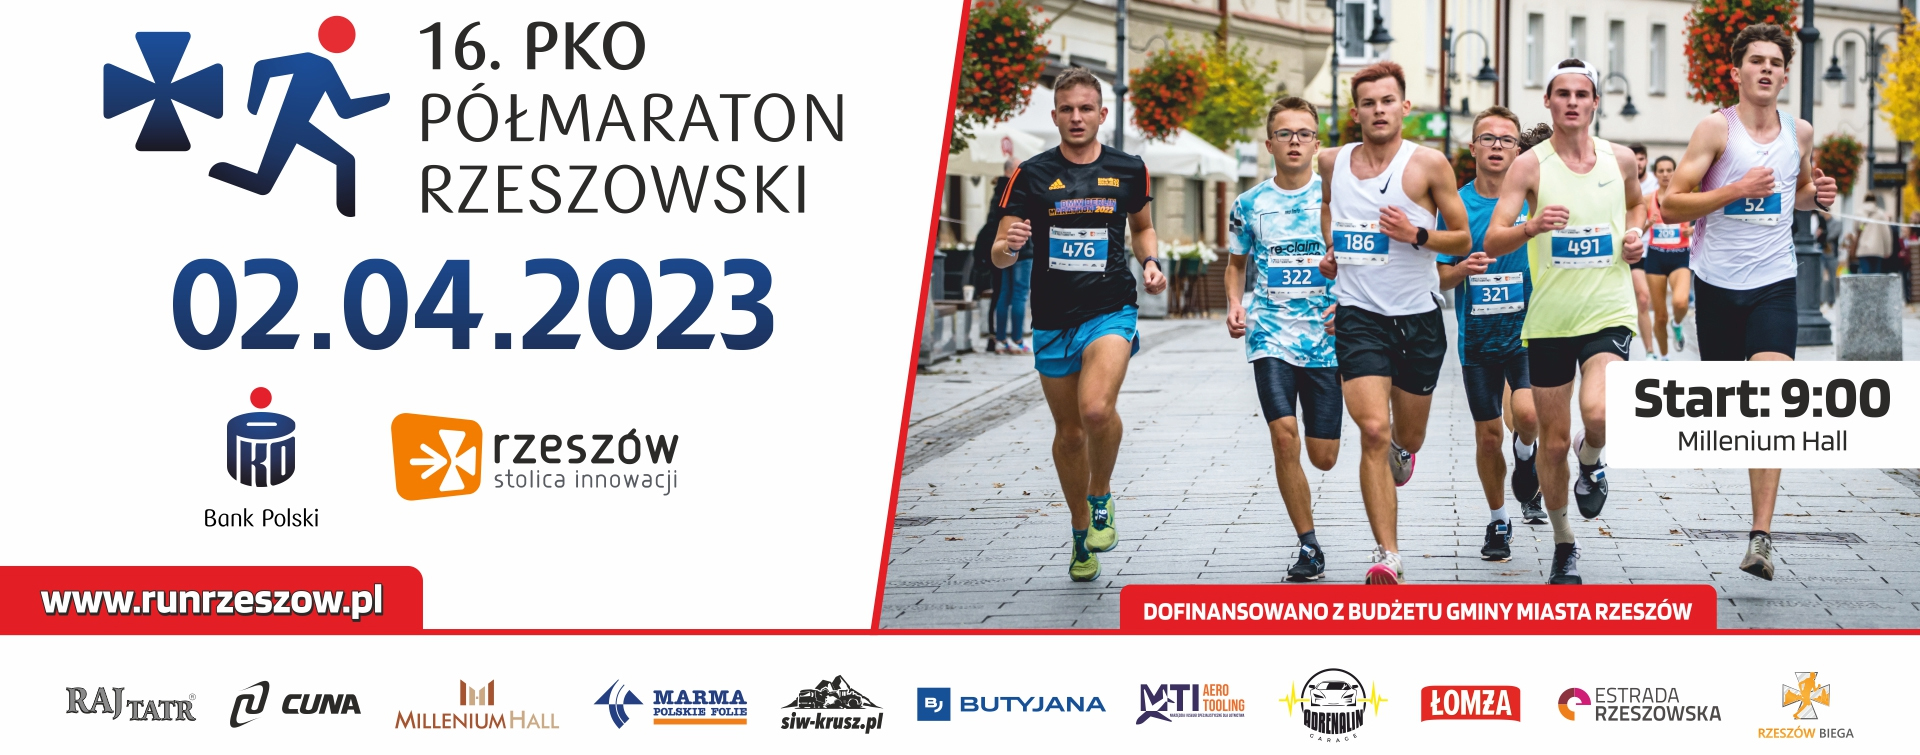 16 pko półmaraton rzeszowski